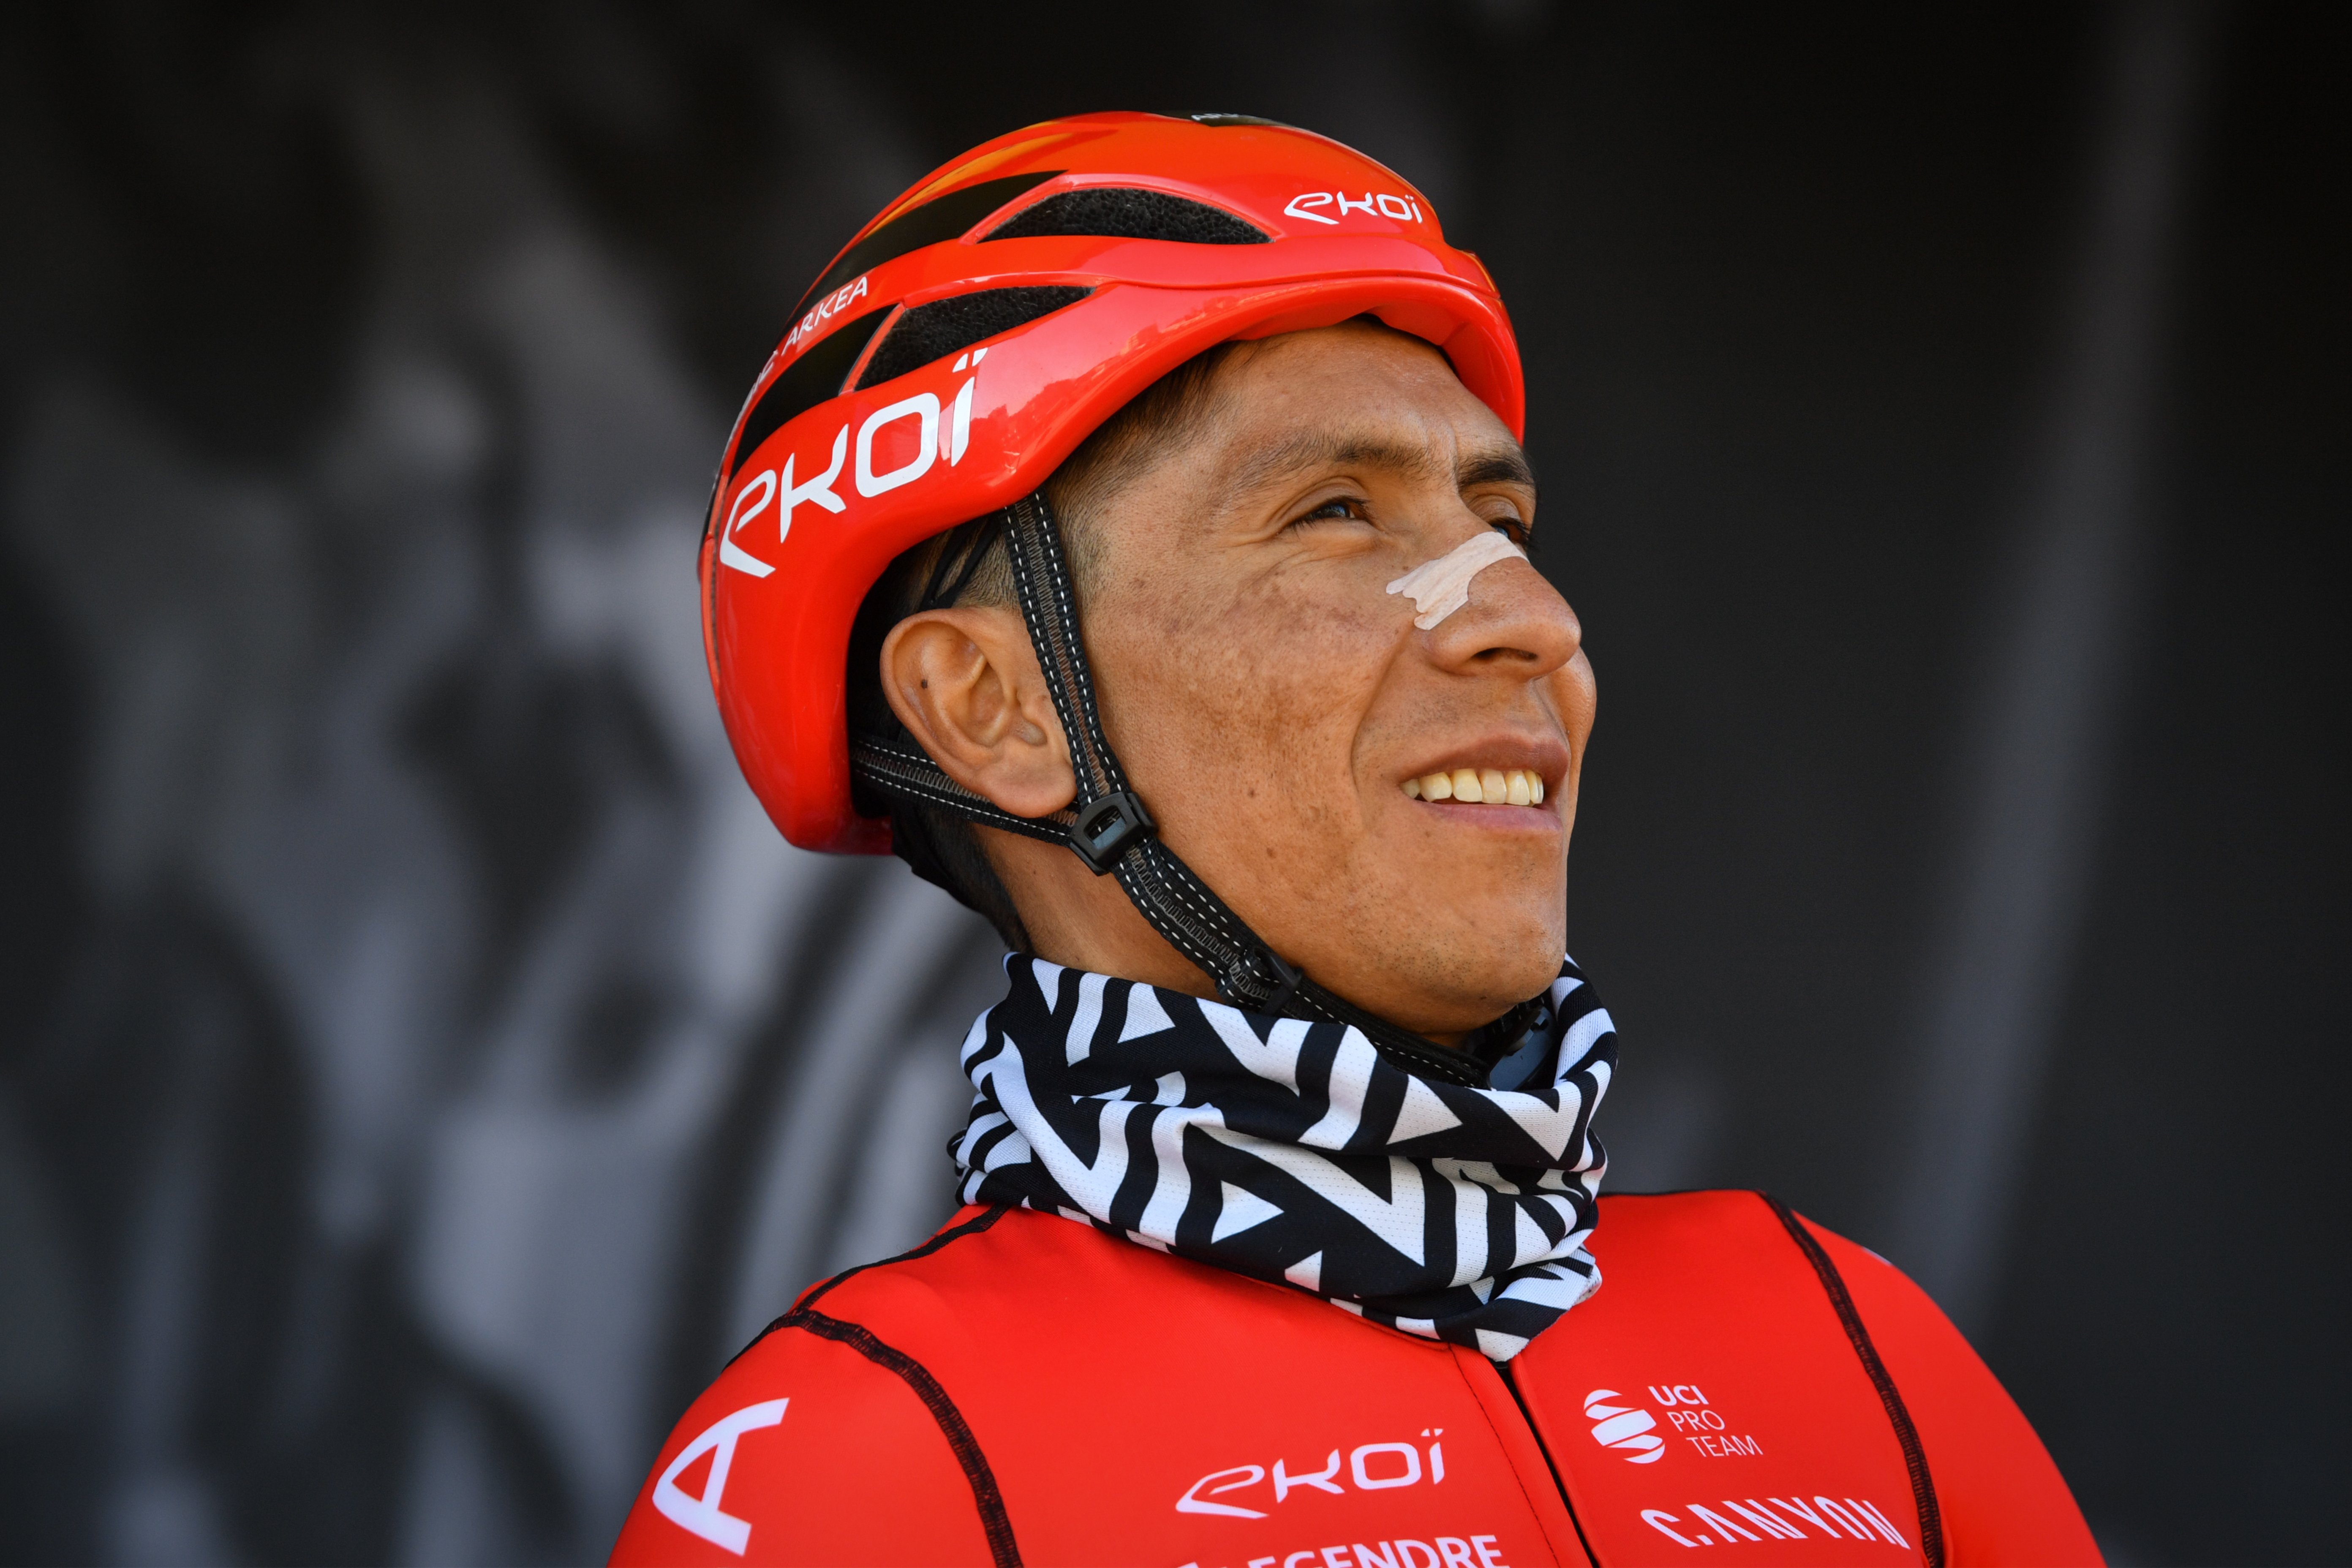 Nairo Quintana, descalificado del Tour de Francia por consumo de tramadol